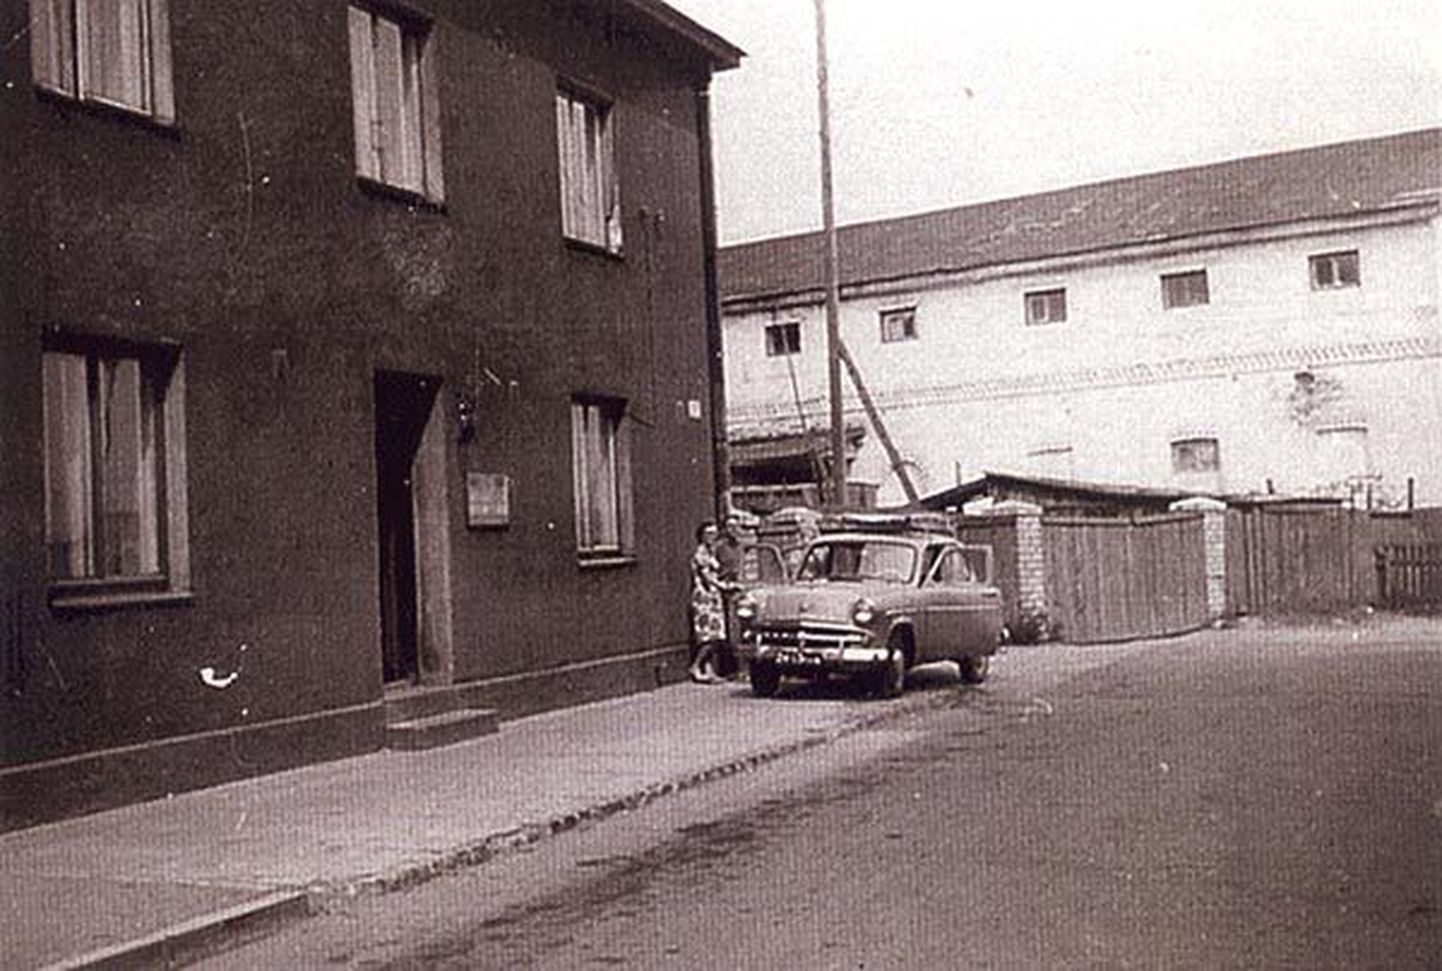 Hommiku 1 vasakul, taamal ait (praegu Yasmina keskus) 1966. aastal.